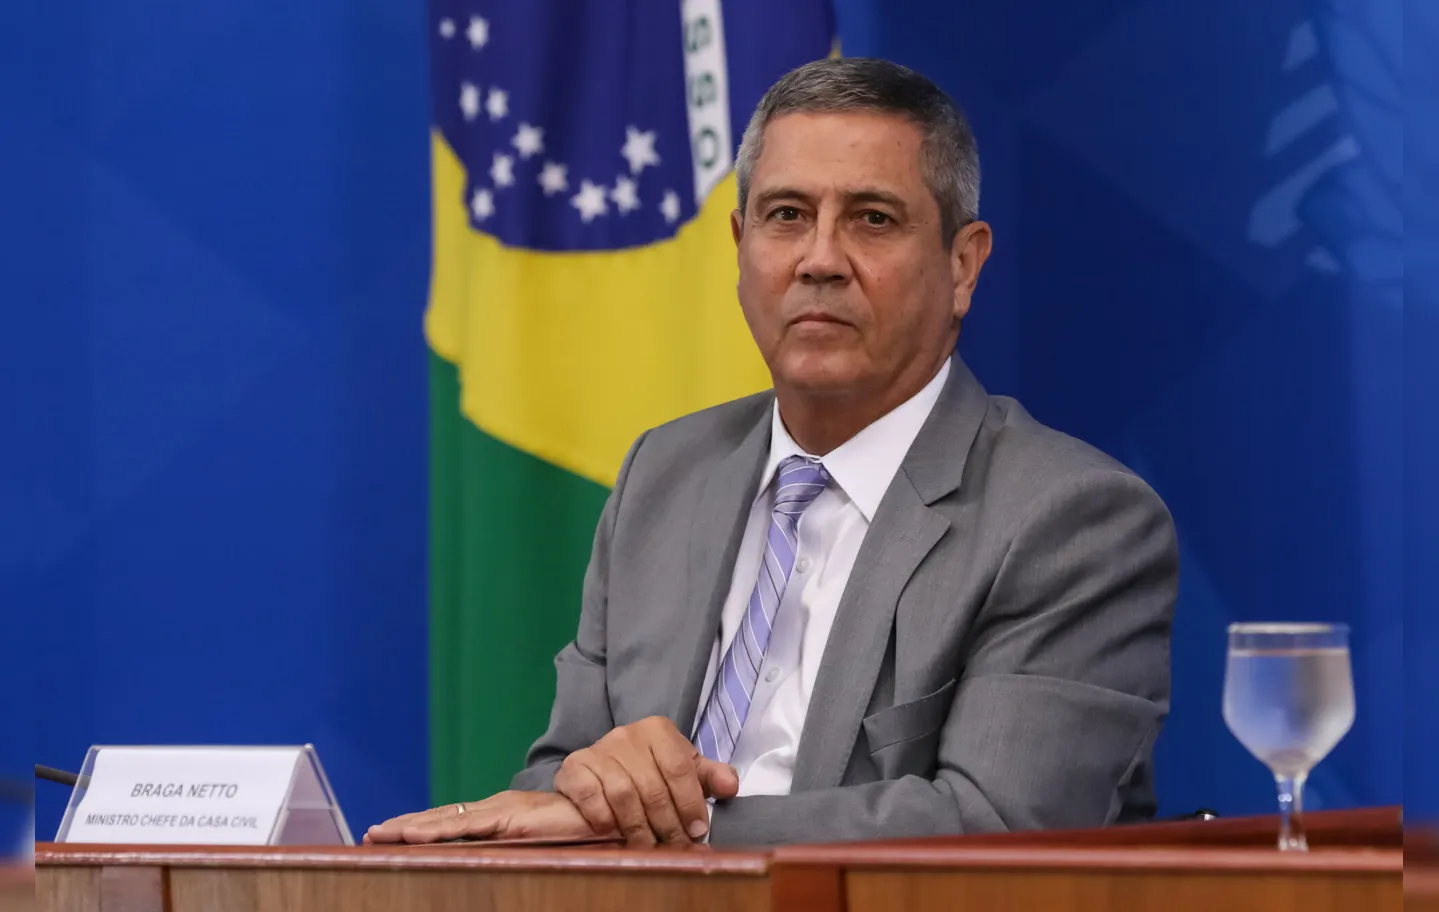 Braga Netto também tinha a possibilidade de ficar inelegível no julgamento de Bolsonaro